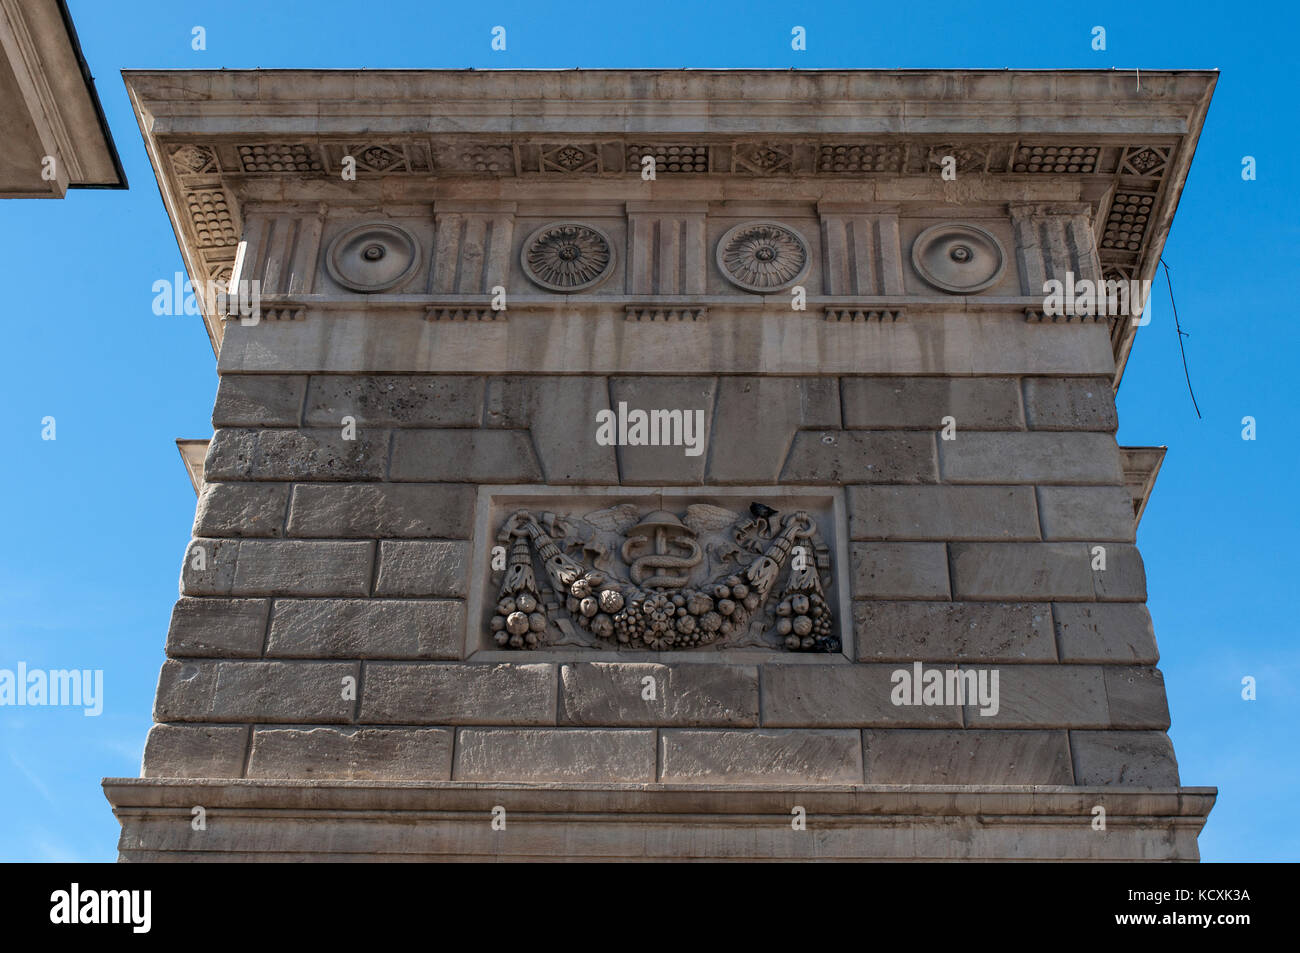 Italia: dettagli architettonici di porta garibaldi, una delle sei porte principali della città vecchia di Milano costruita all'interno dei bastioni (le antiche mura) Foto Stock